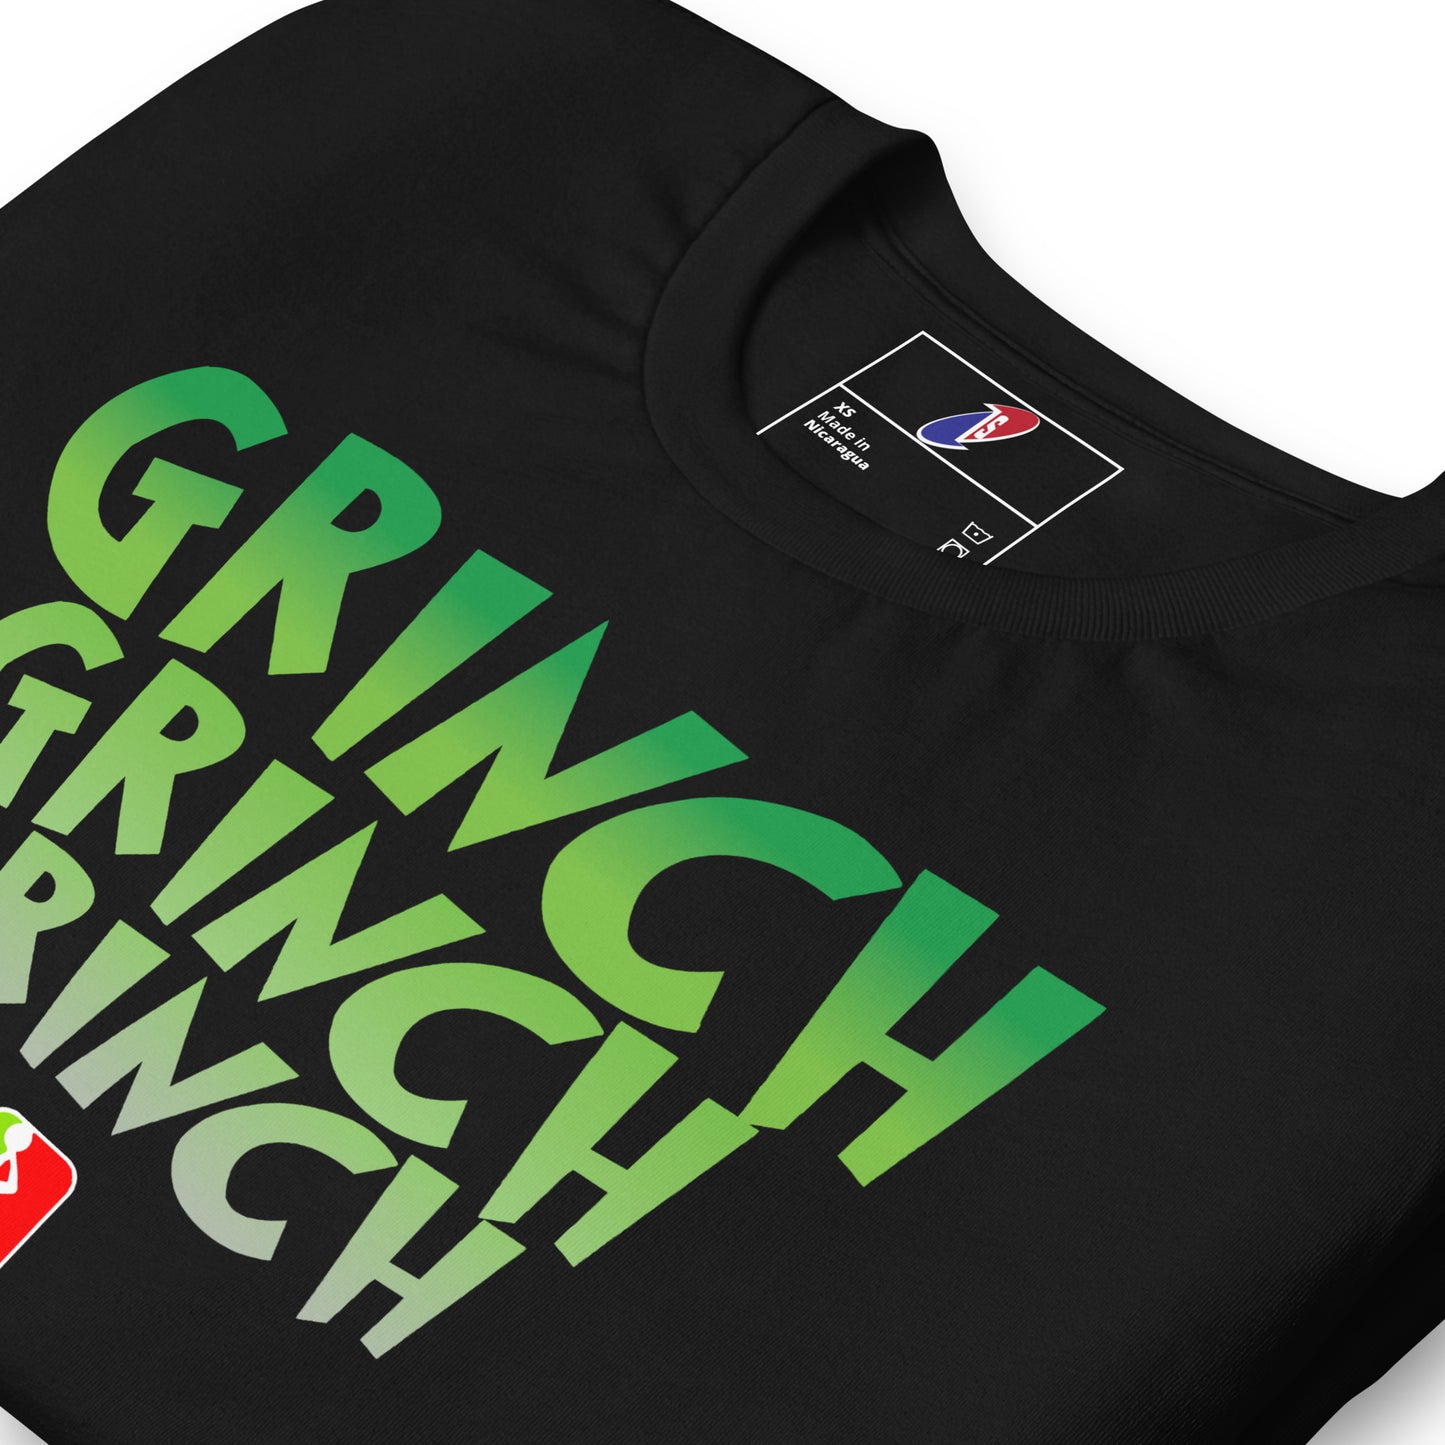 Echo Grinch shirt